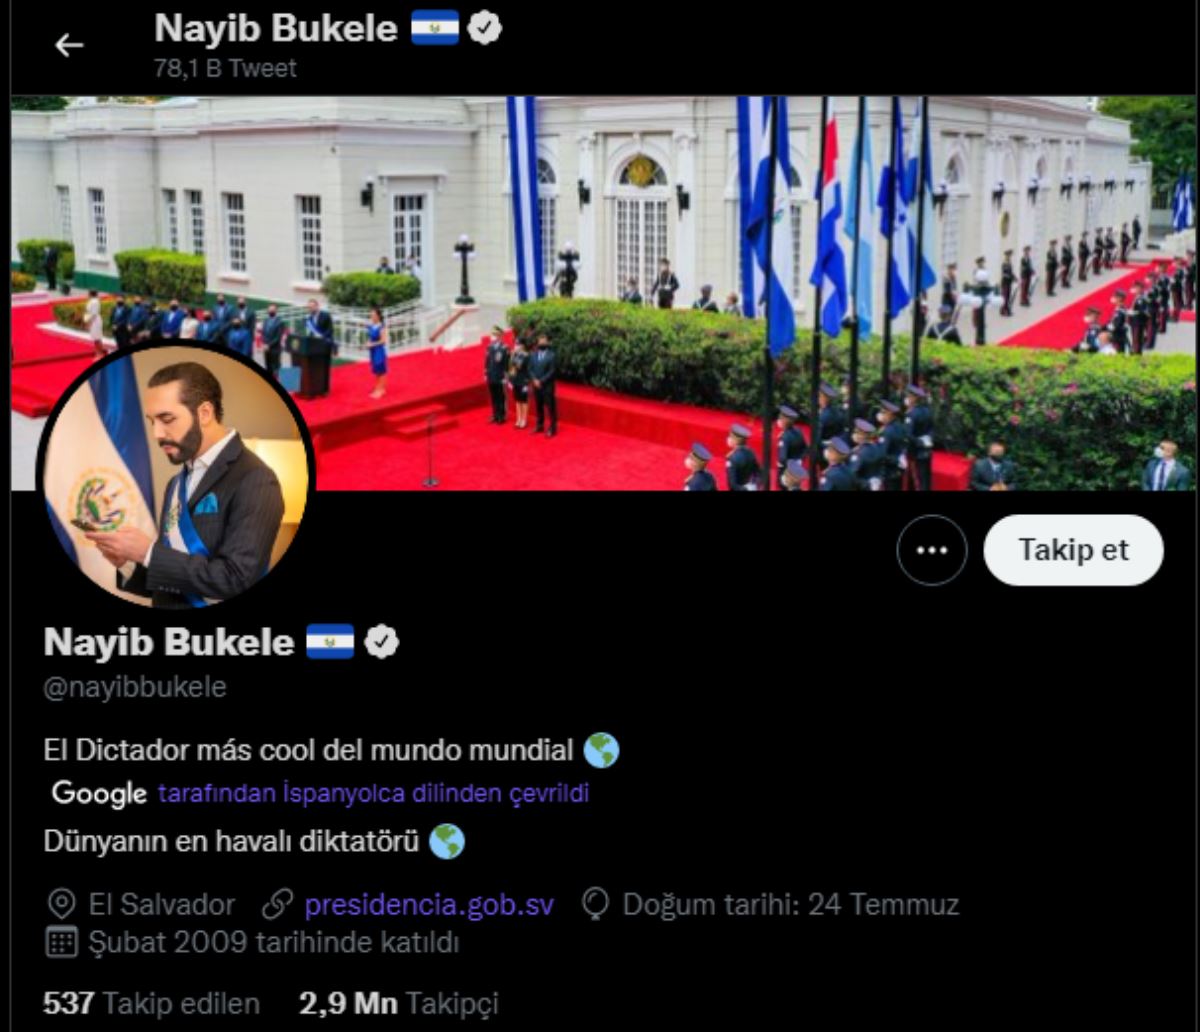 El Salvador Devlet Başkanı Bukele, Twitter'da kendini "diktatör" olarak tanımladı